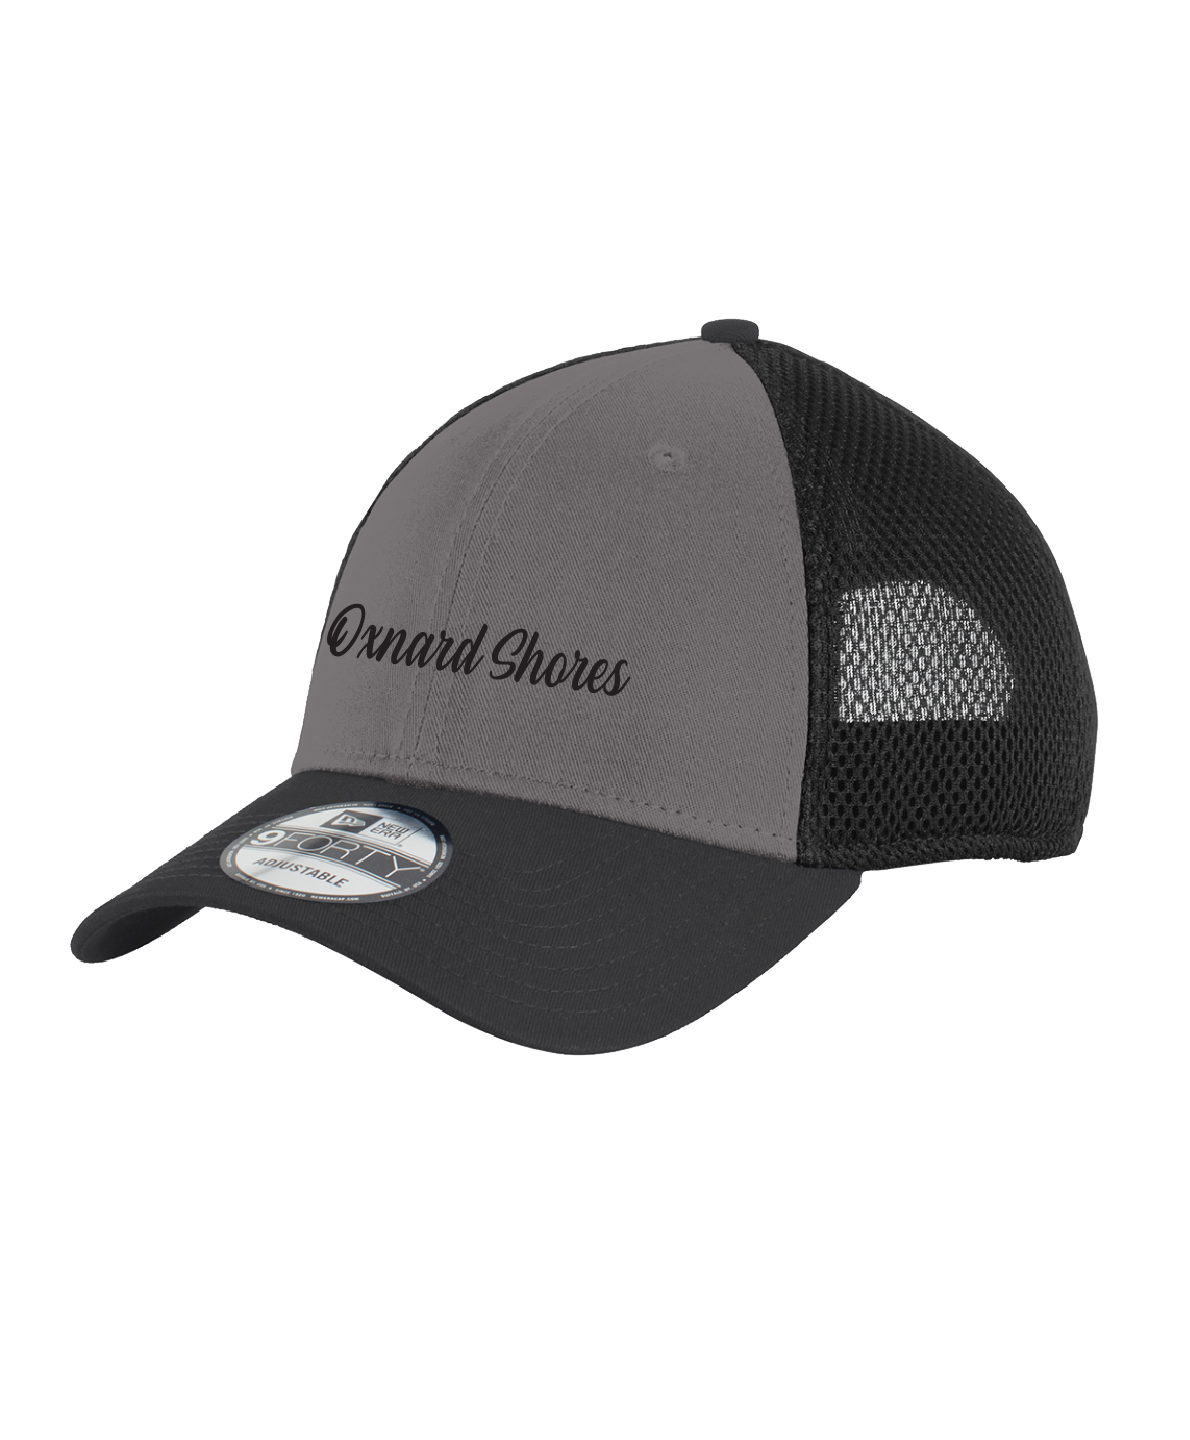 Oxnard Shores - New Era® - Snapback Contrast Front Mesh Cap